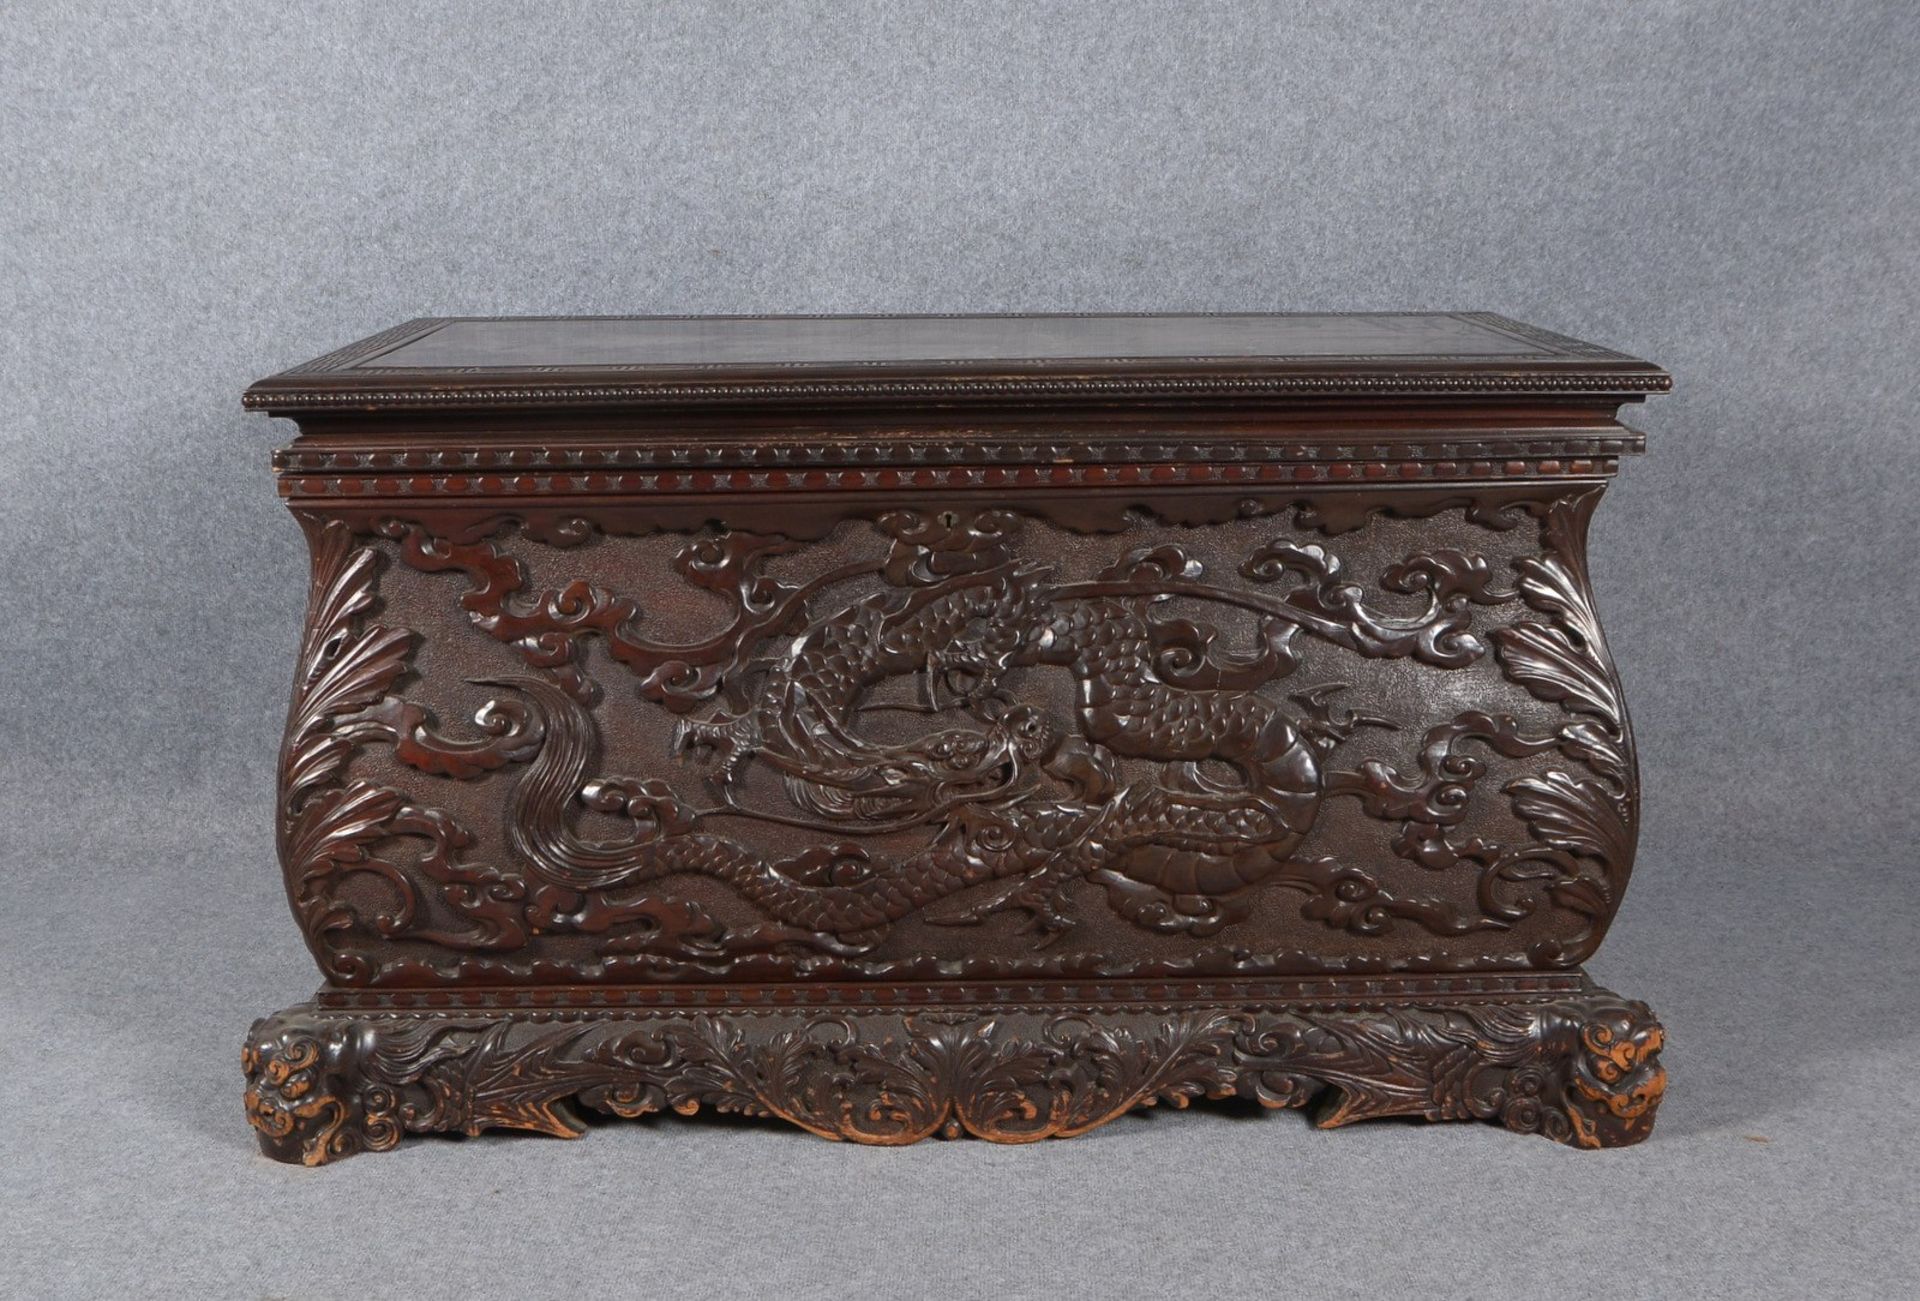 Holztruhe, mit geschnitztem Reliefdekor (Drachenmotiv), auf figürl. Füßen ('Fu-Hunde')